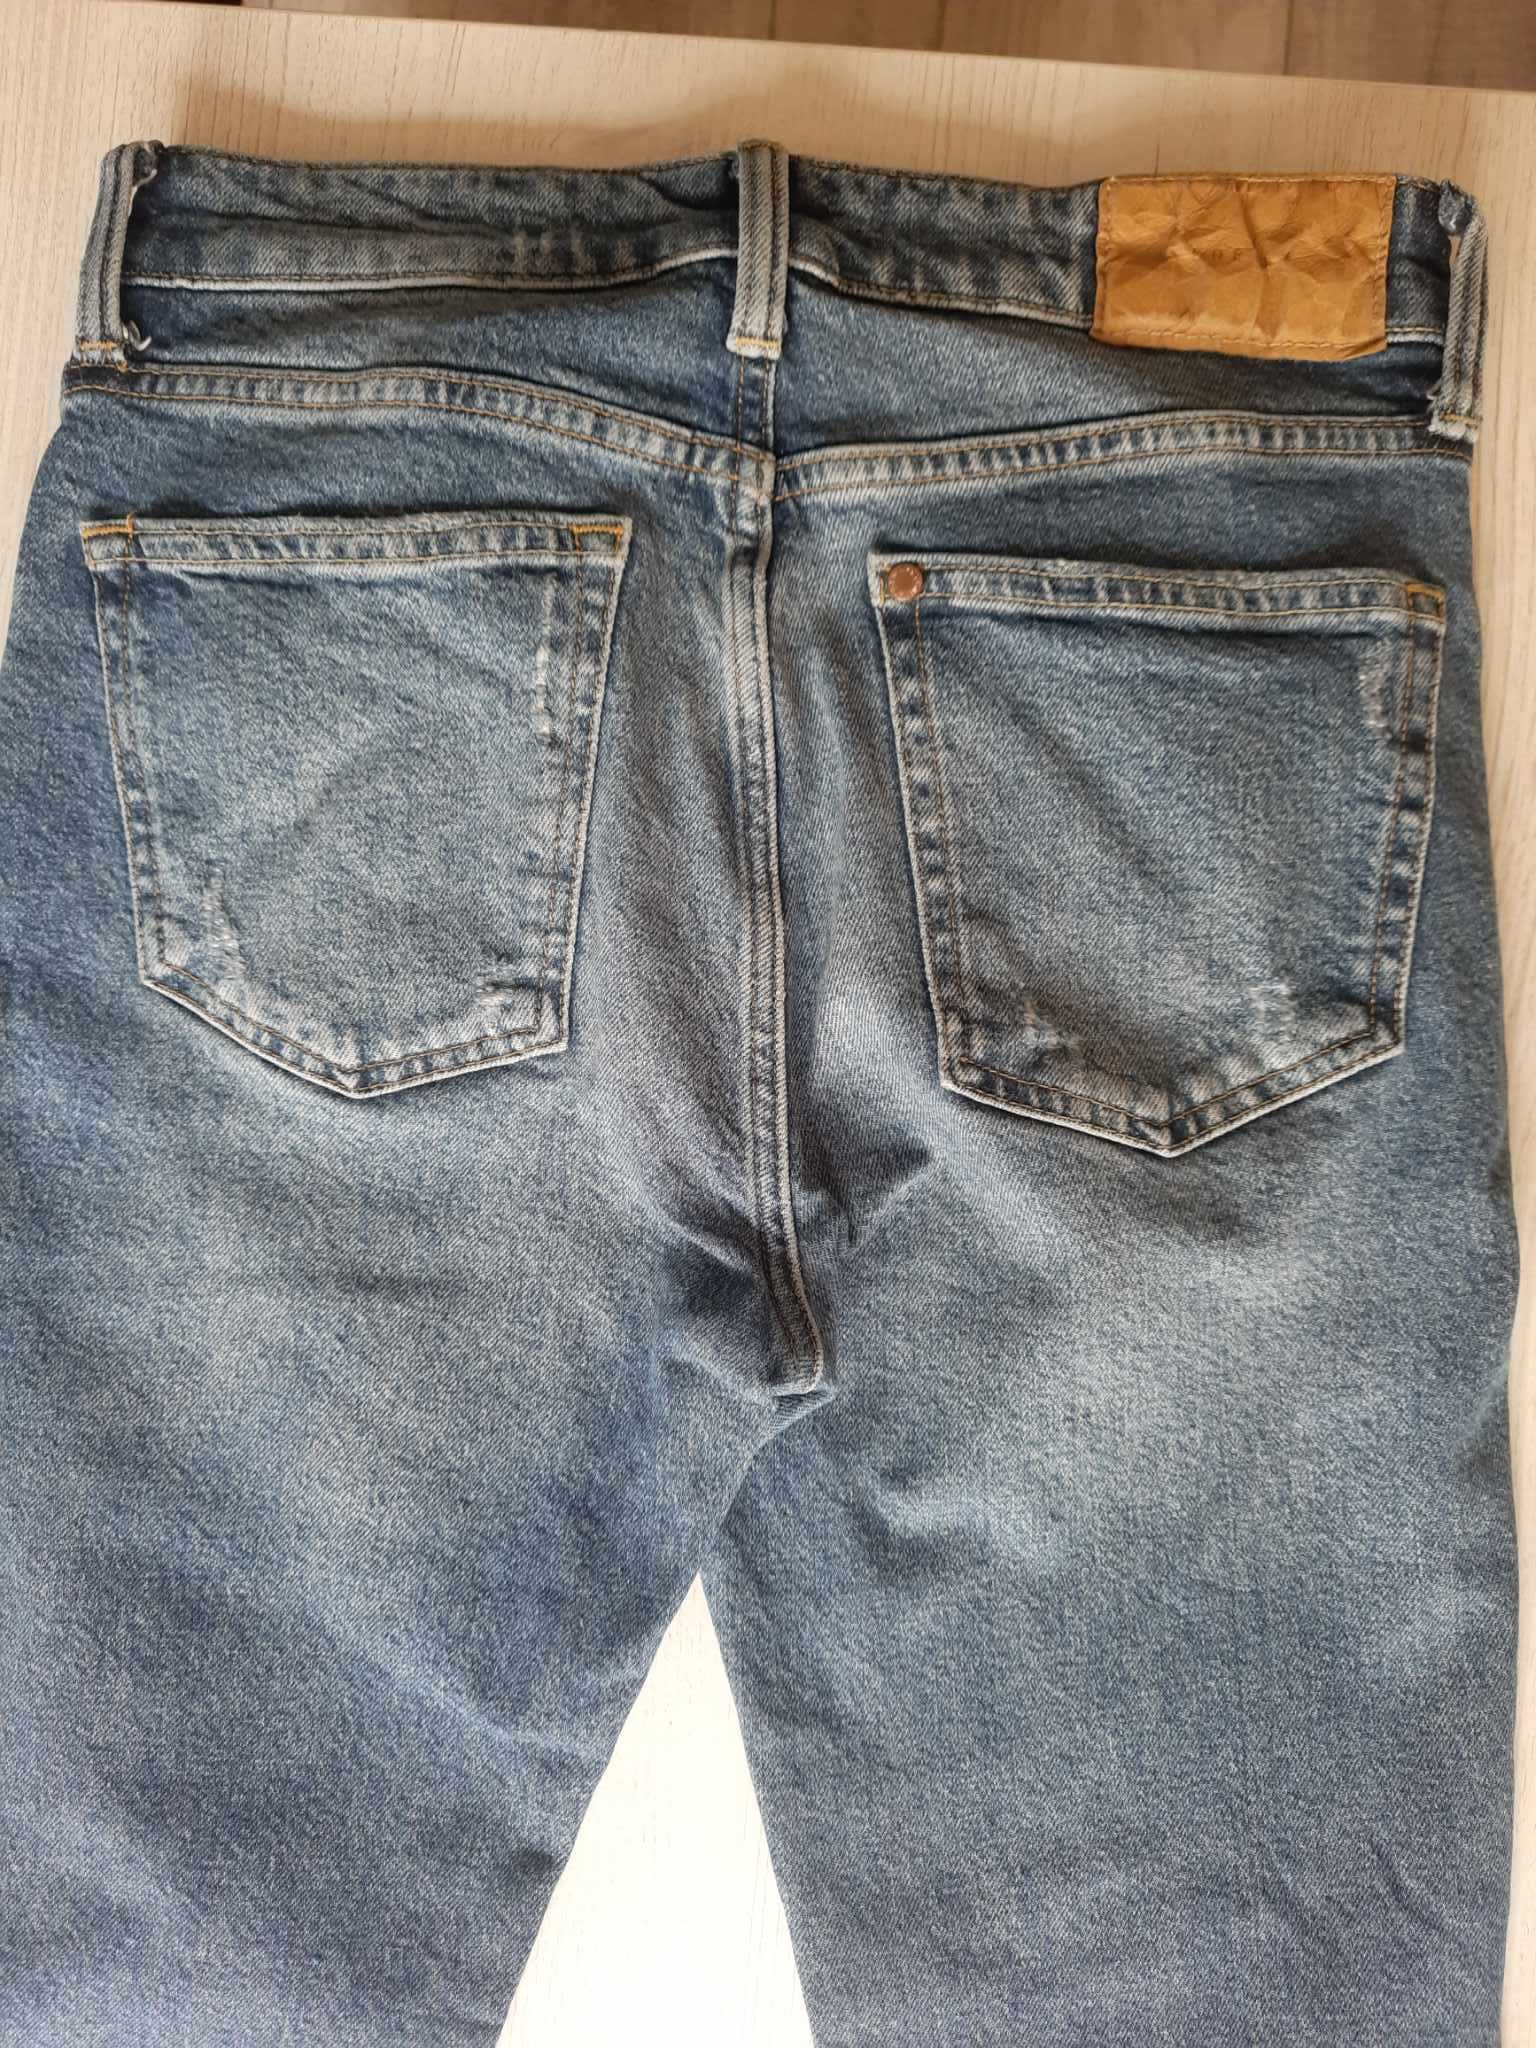 Spodnie Jeans męskie rozmiar 28